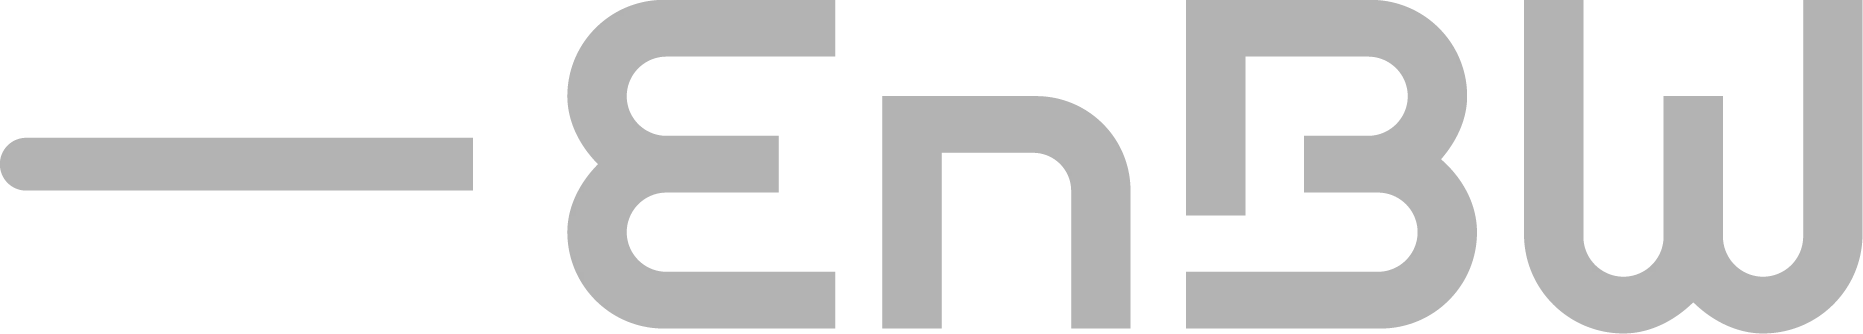 ENBW - logo